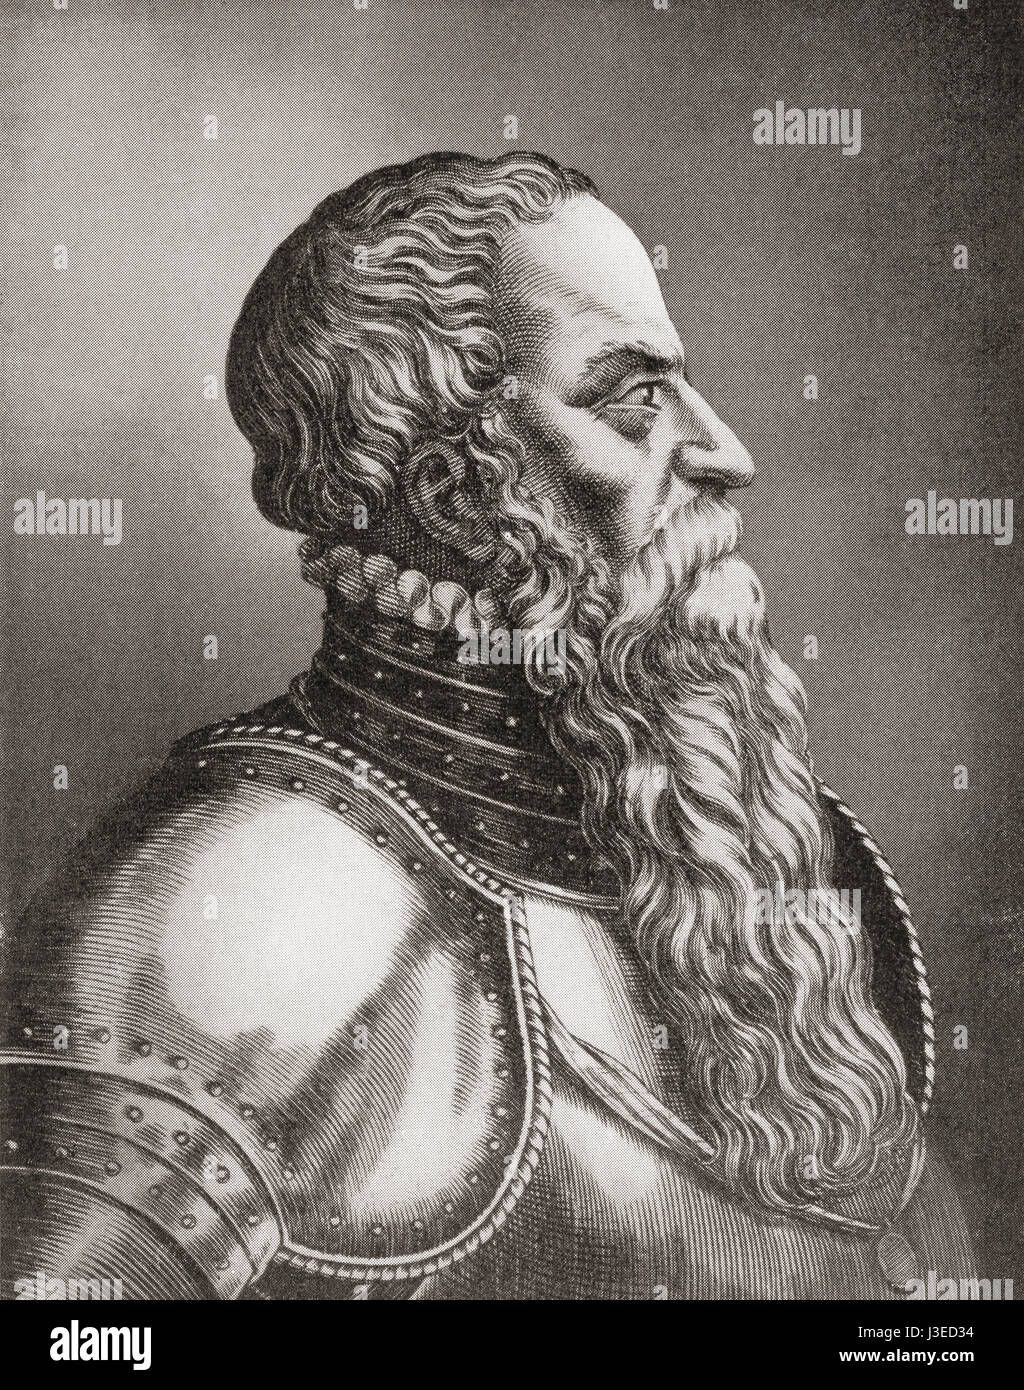 Gustavo, nato Gustav Eriksson del Vasa famiglia nobile e più tardi noto come Gustav Vasa, 1496 - 1560. Re di Svezia. Da Hutchinson nella storia delle nazioni, pubblicato 1915. Foto Stock